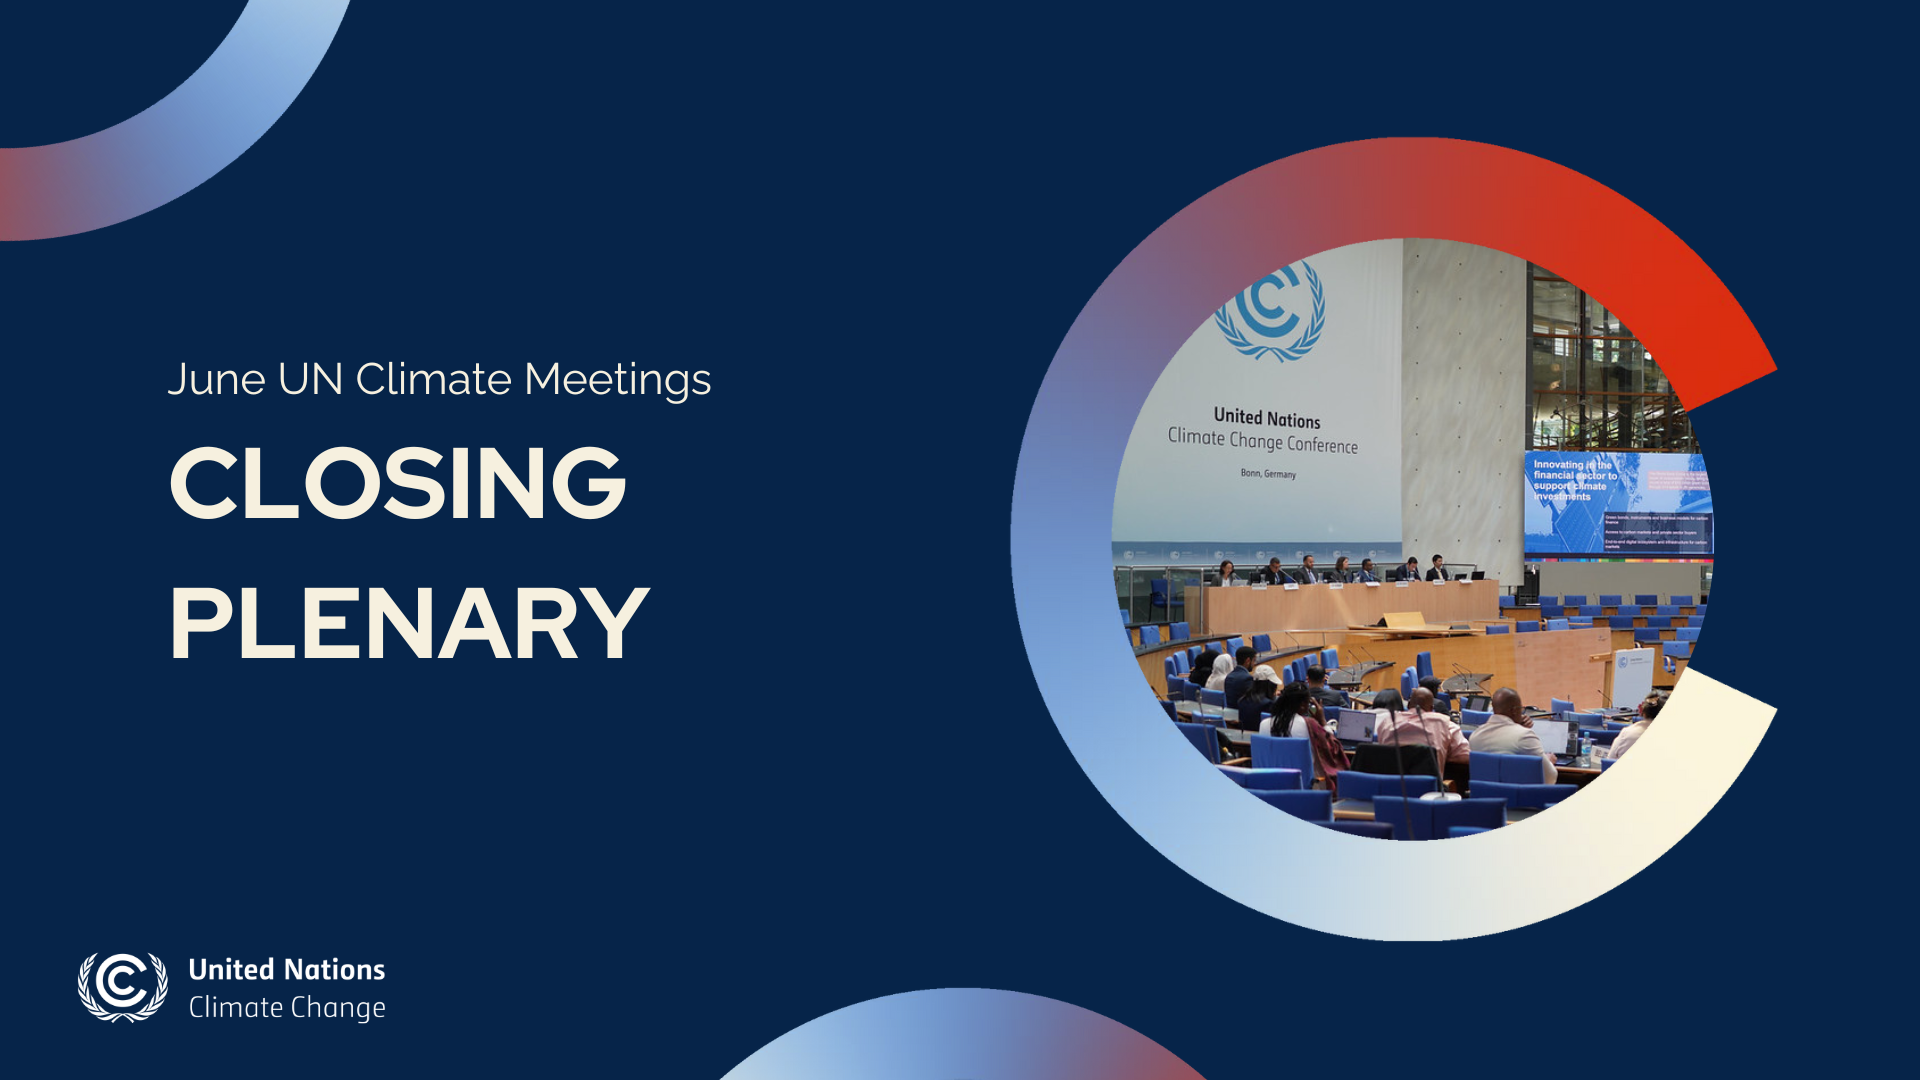 Closing plenary of June UN Climate Meetings